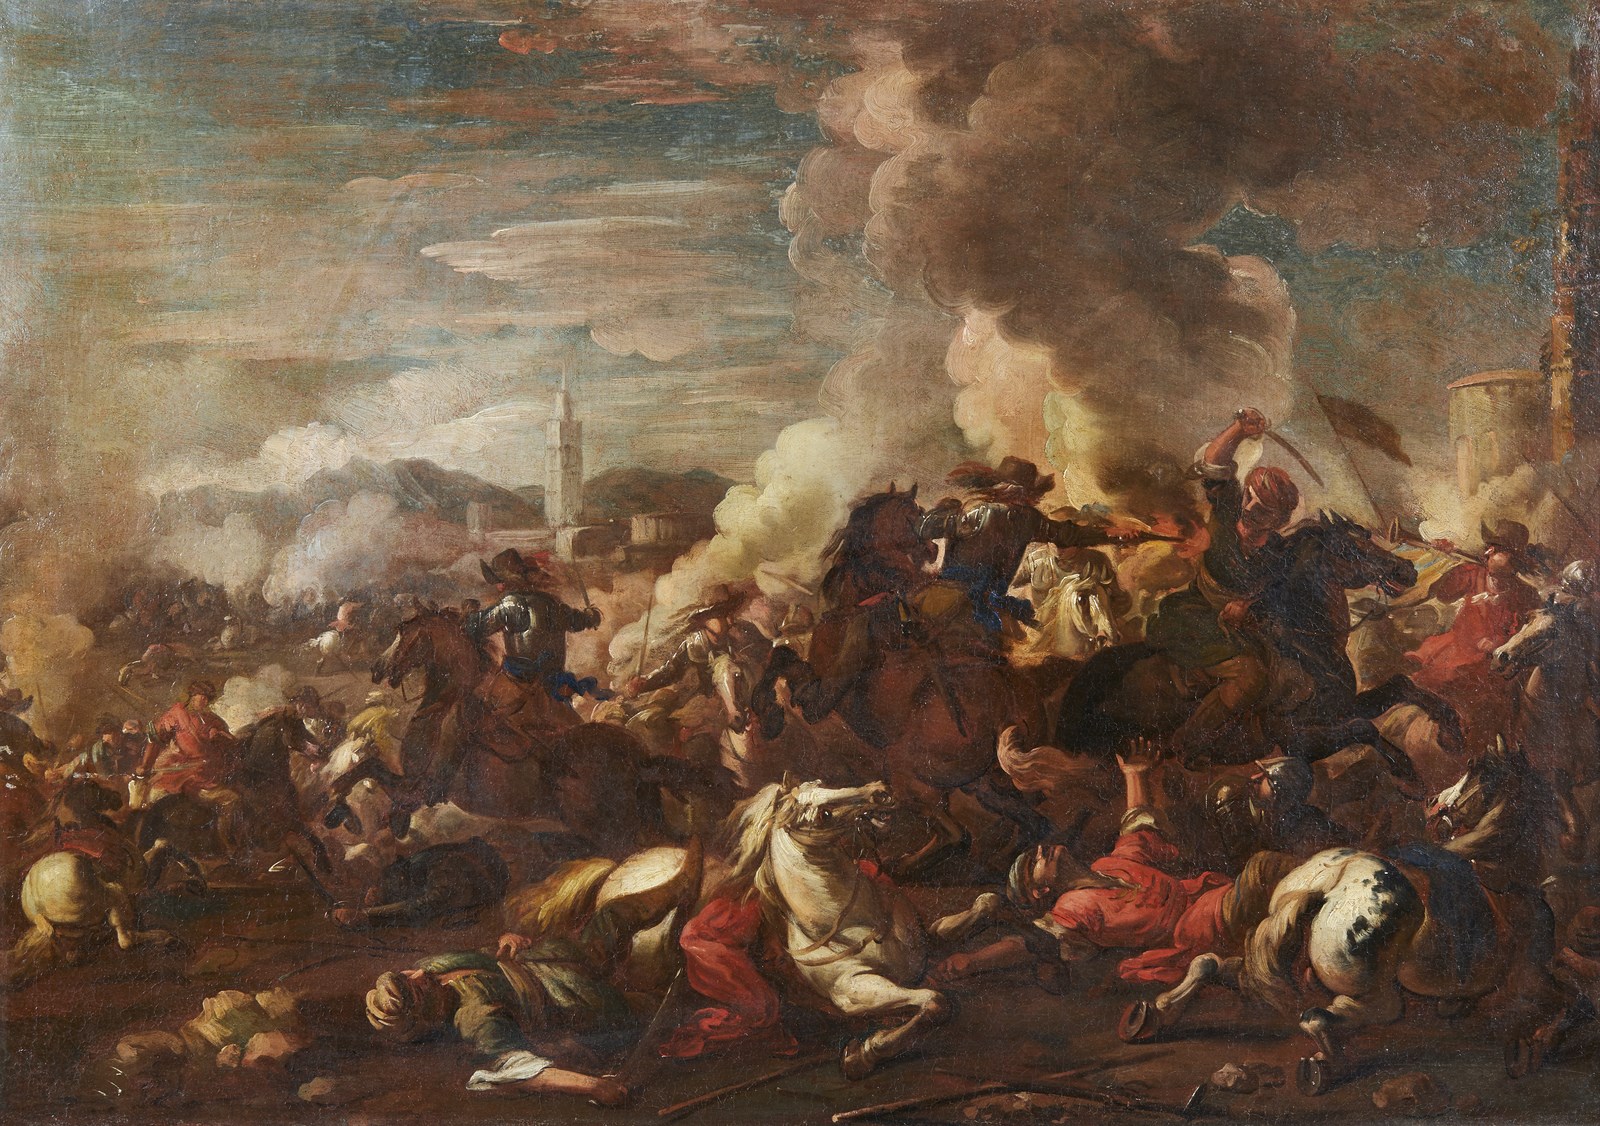 Battle between Turkish and Christian knights (Francesco  Monti Detto Il Brescianino Delle Battaglie)